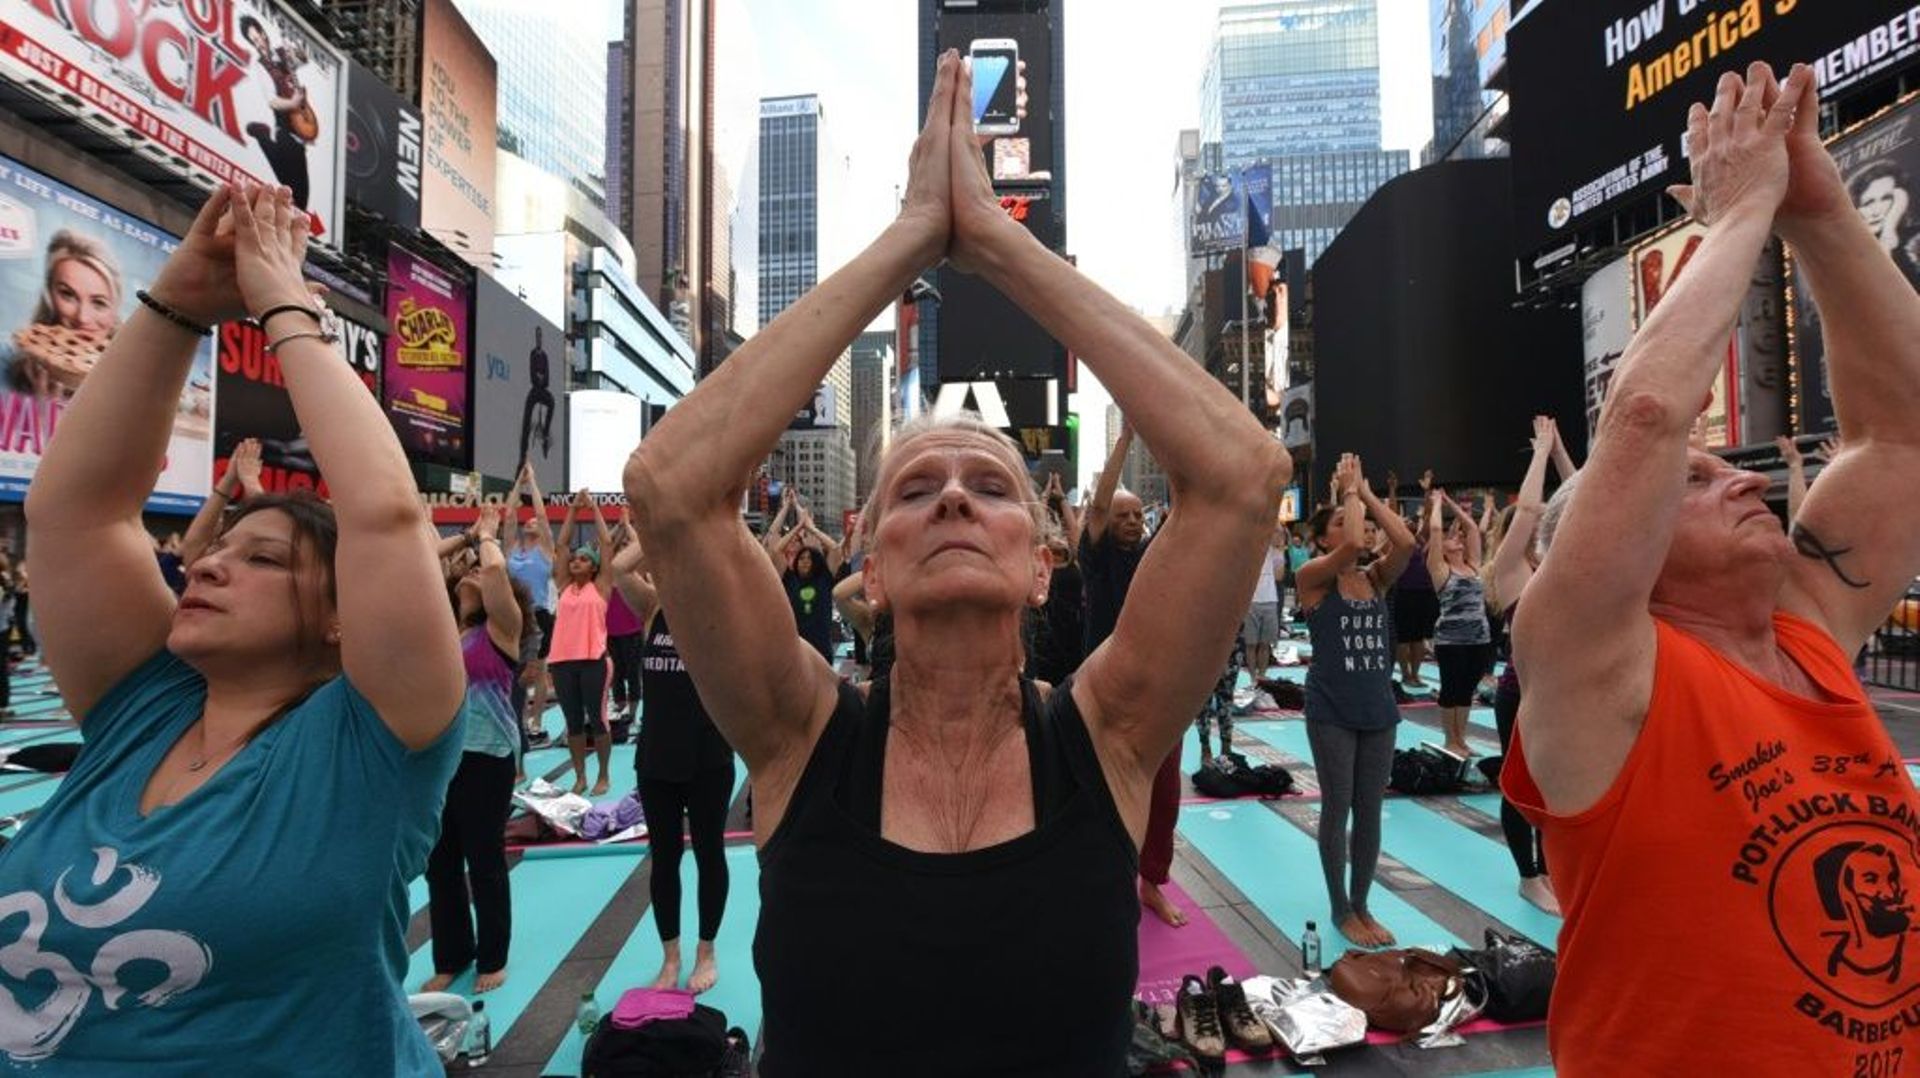 Des yogis célébrent le solstice d'été, sur Times Square à New York, le 21 juin 2017